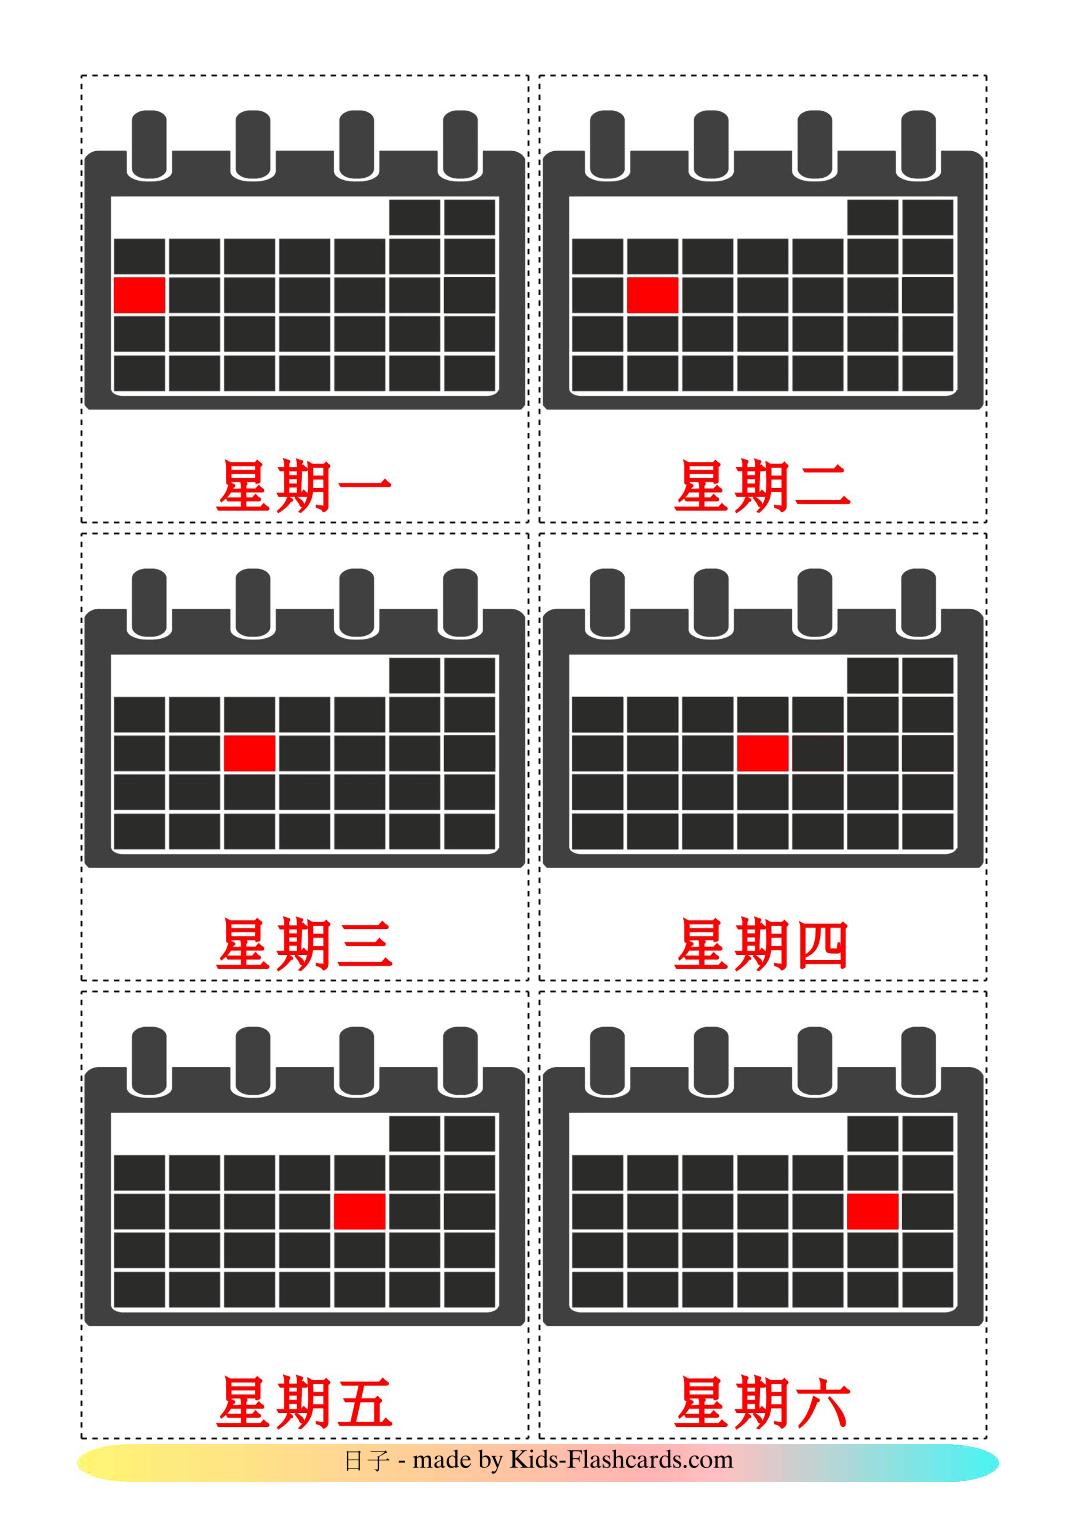 Les Jours de la Semaine - 12 Flashcards chinois(traditionnel) imprimables gratuitement